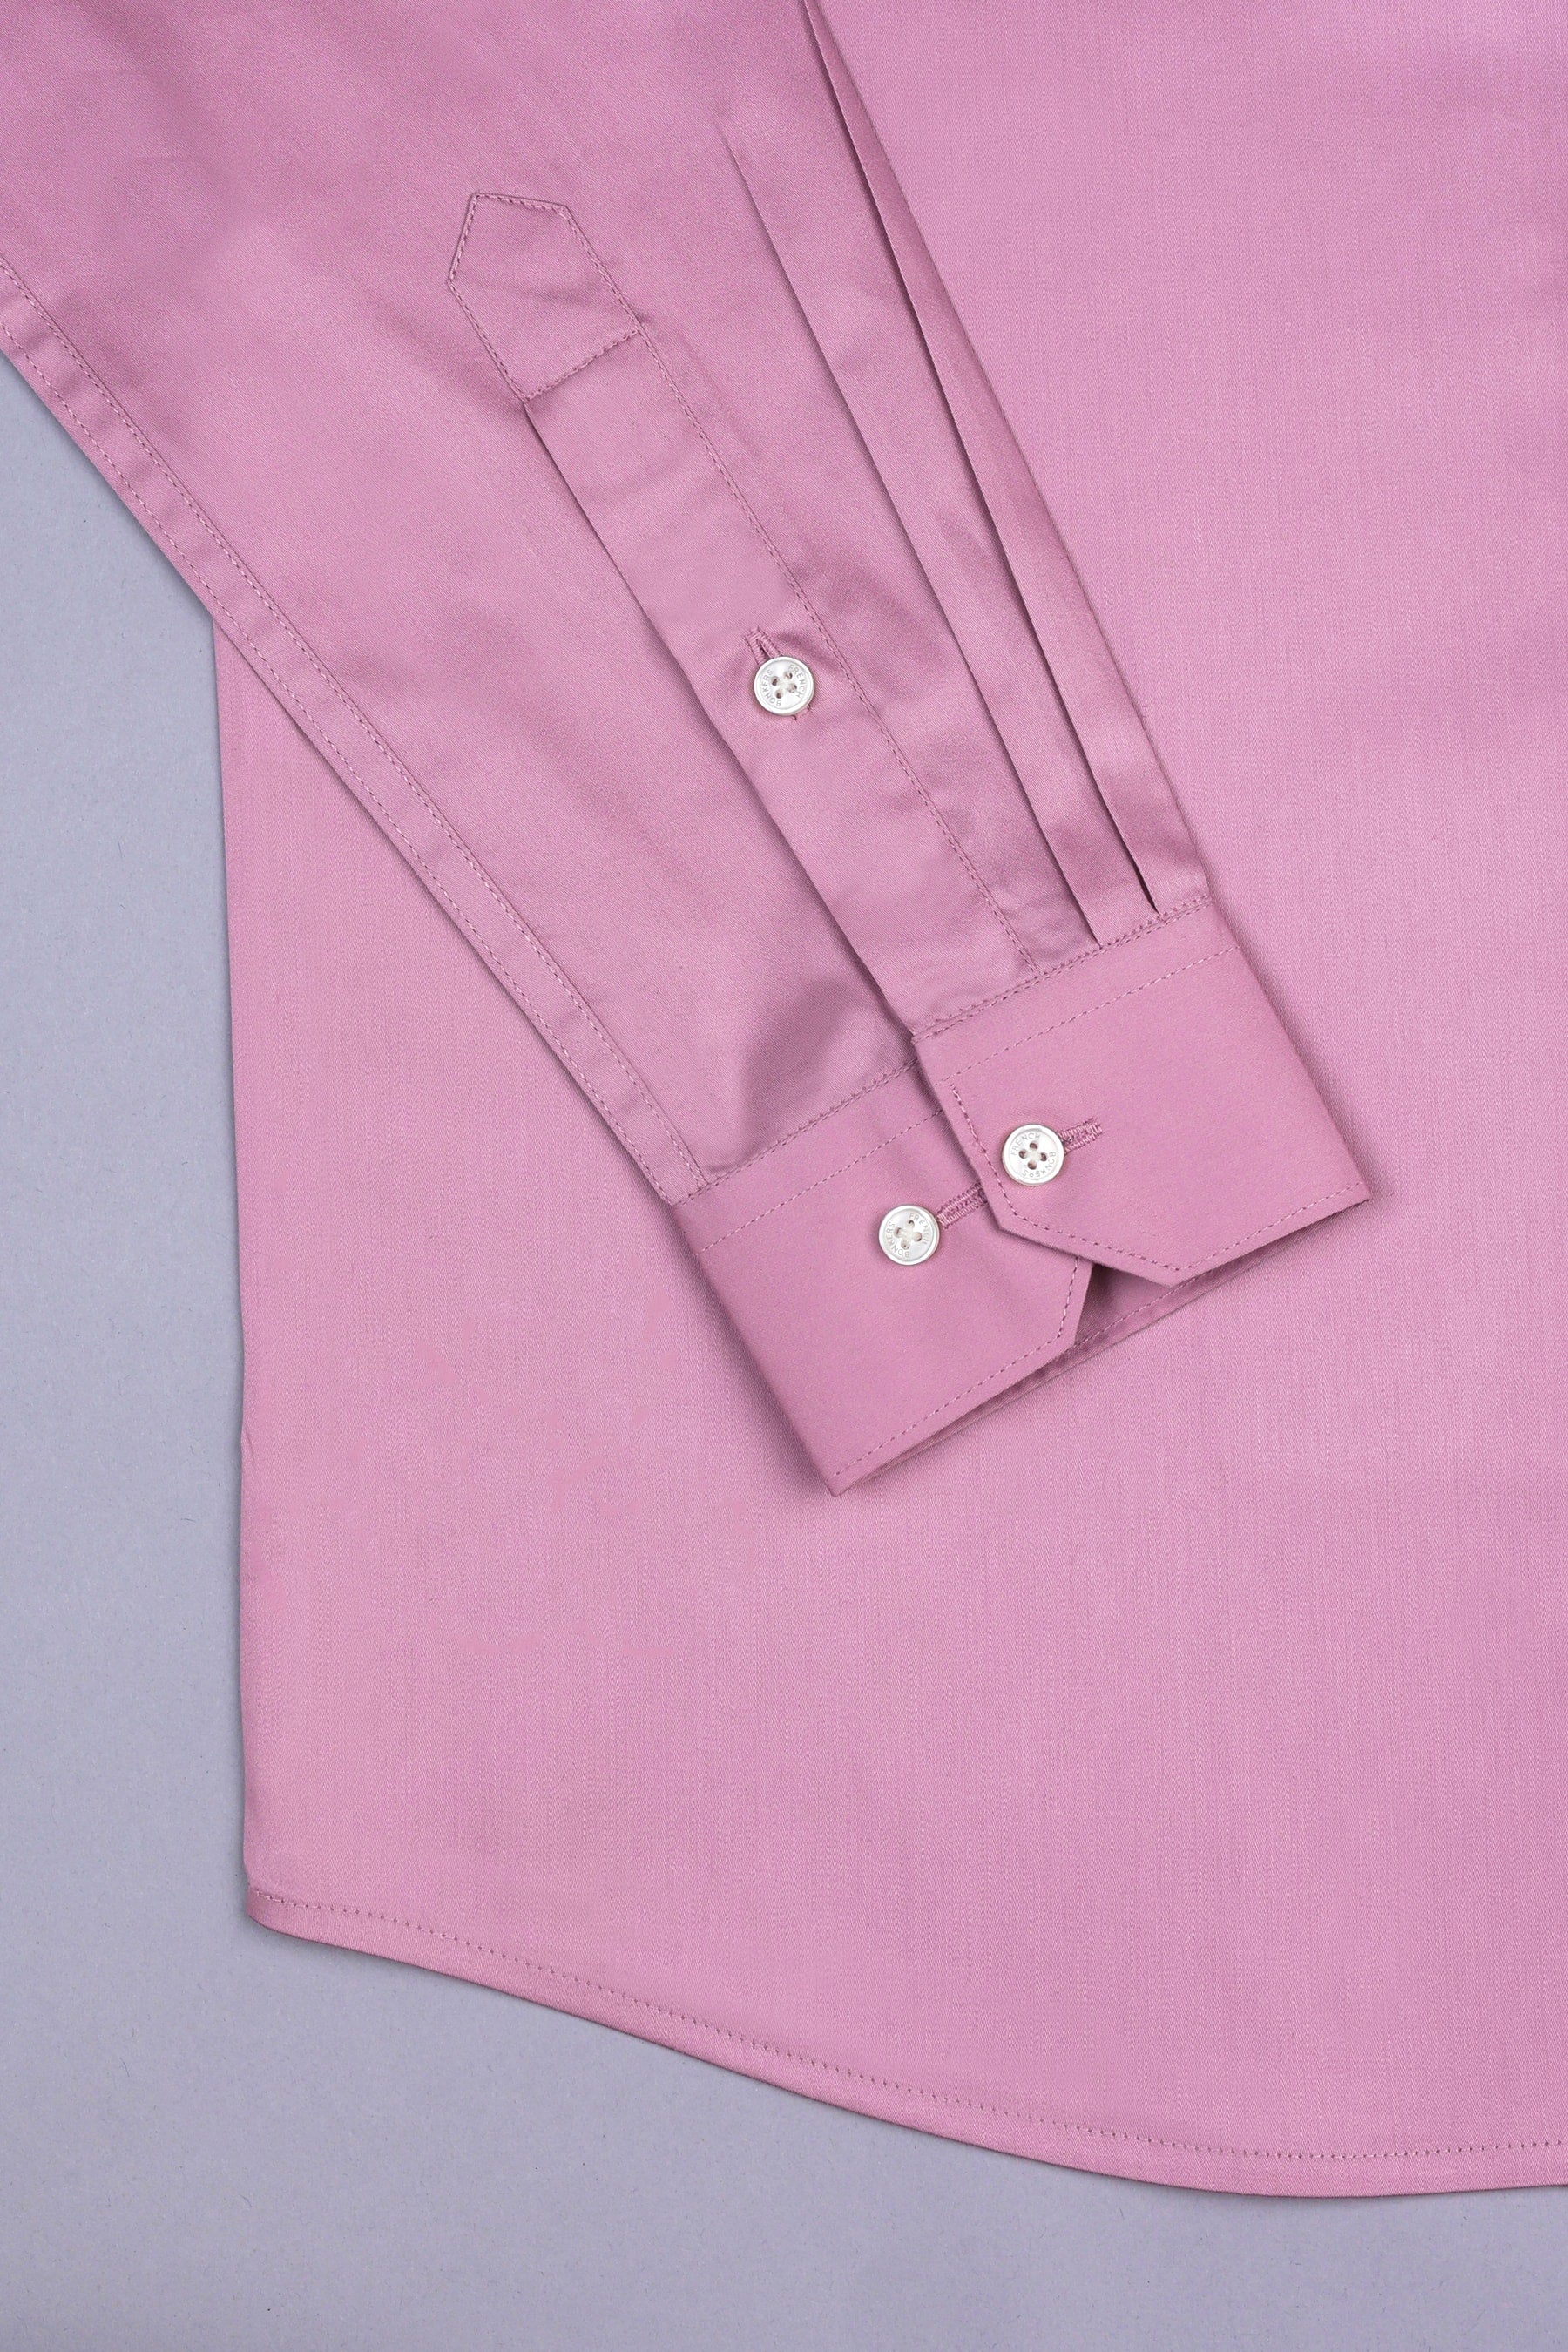 Tea rose pink cotton satin shirt